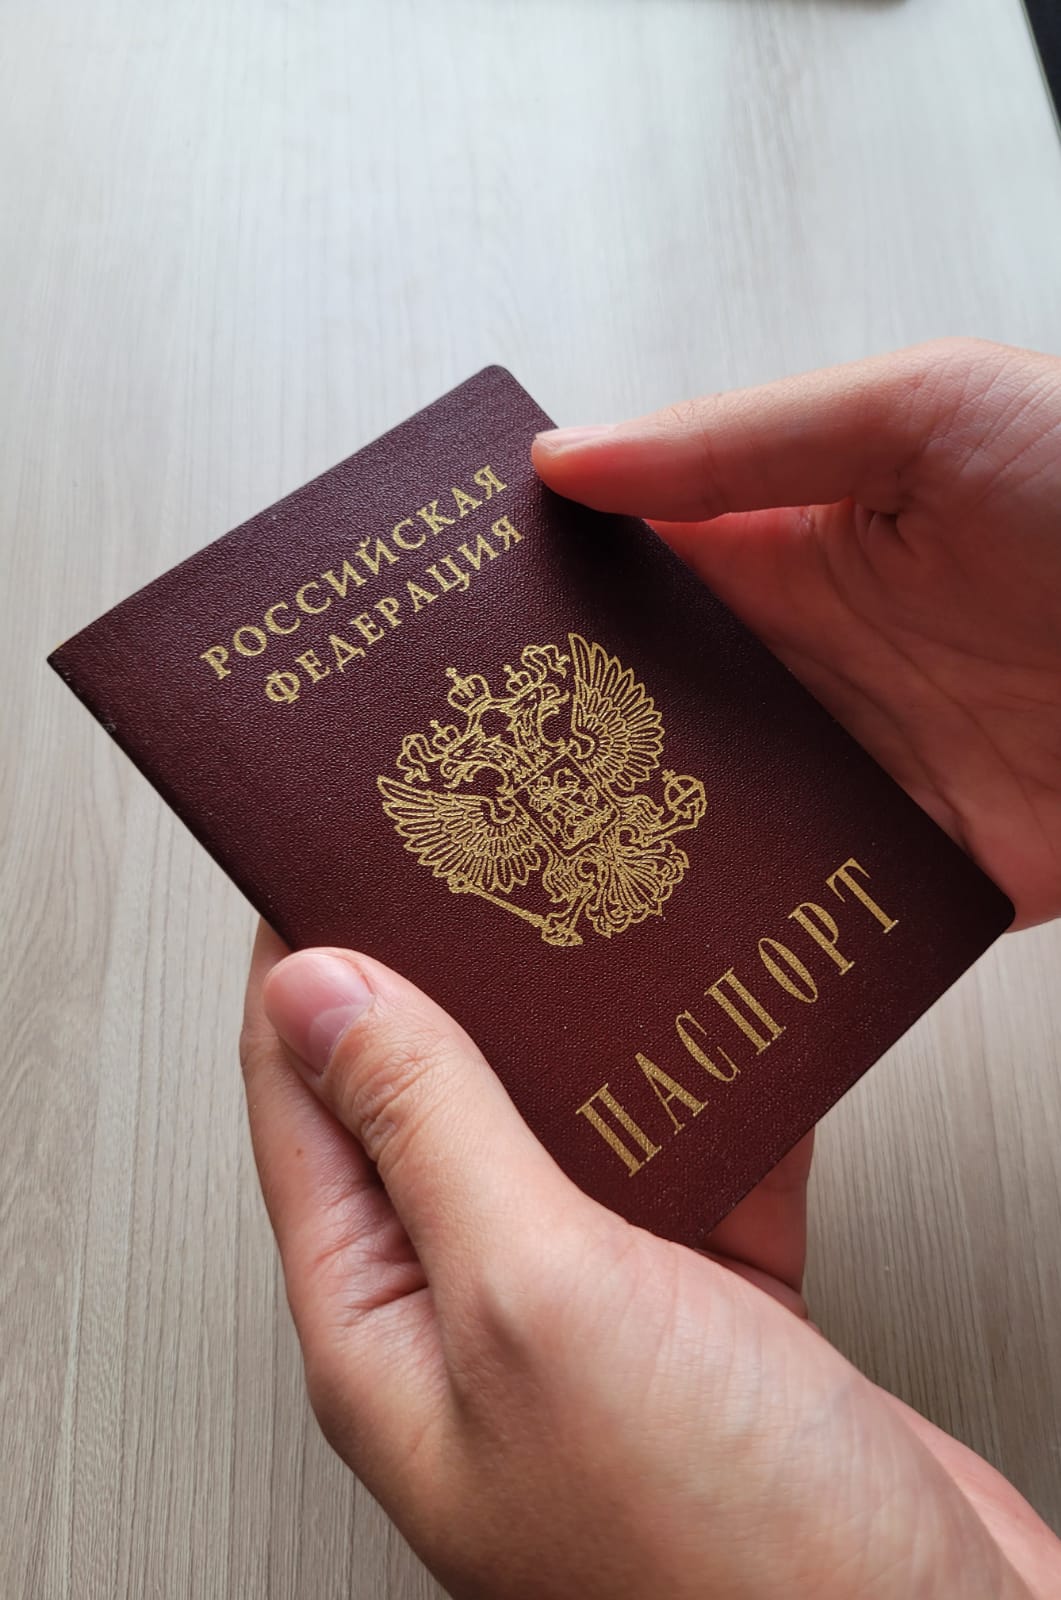 Законно ли требование оставить паспорт в залог?